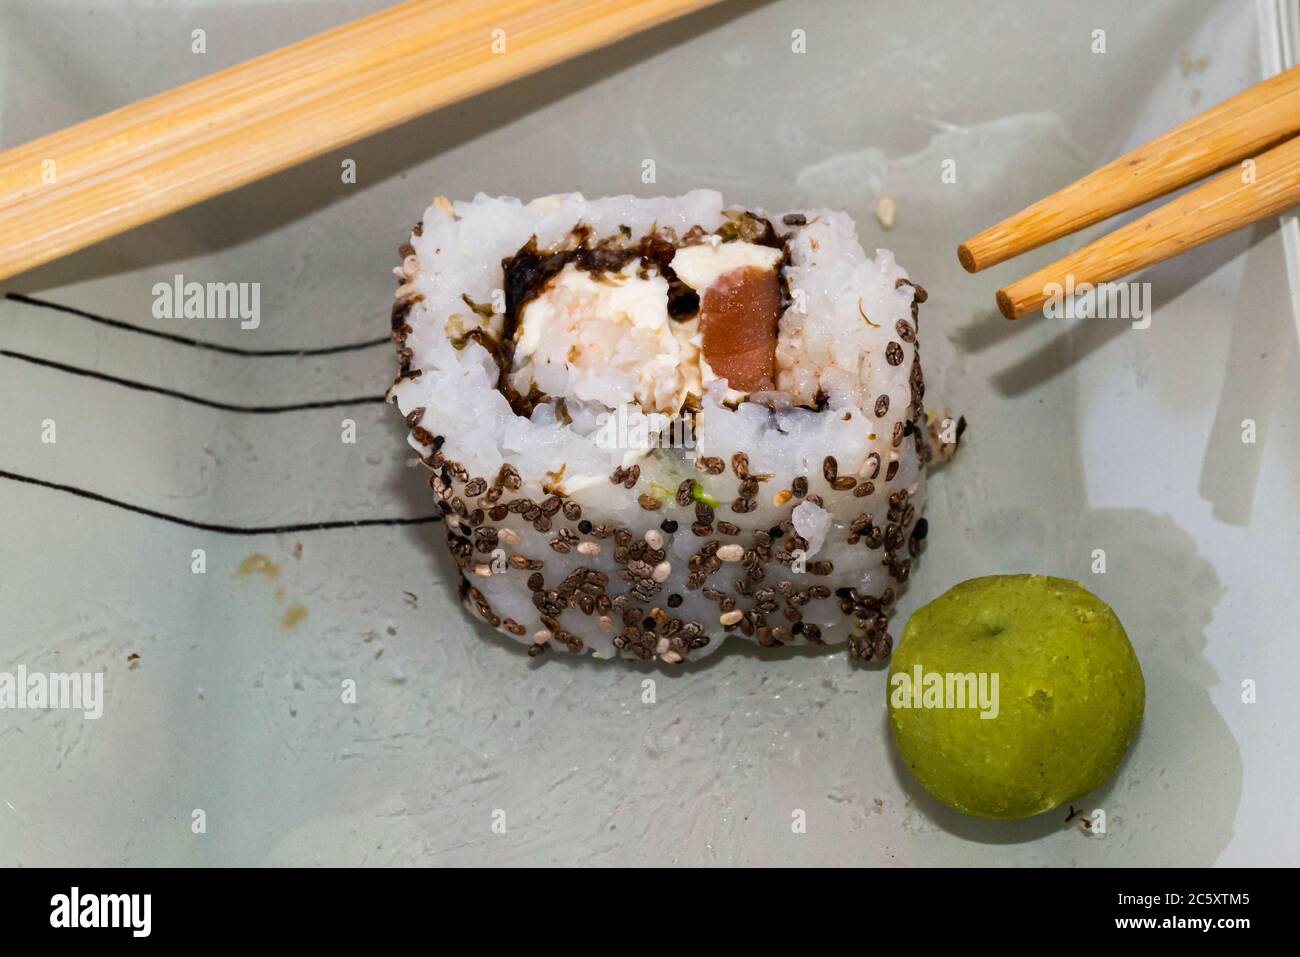 Les sushis japonais sont excellents. Maki et petits pains au thon, au saumon et à l'avocat. Vue de dessus du rouleau de sushi. wasabi. Foyer sélectif. Banque D'Images